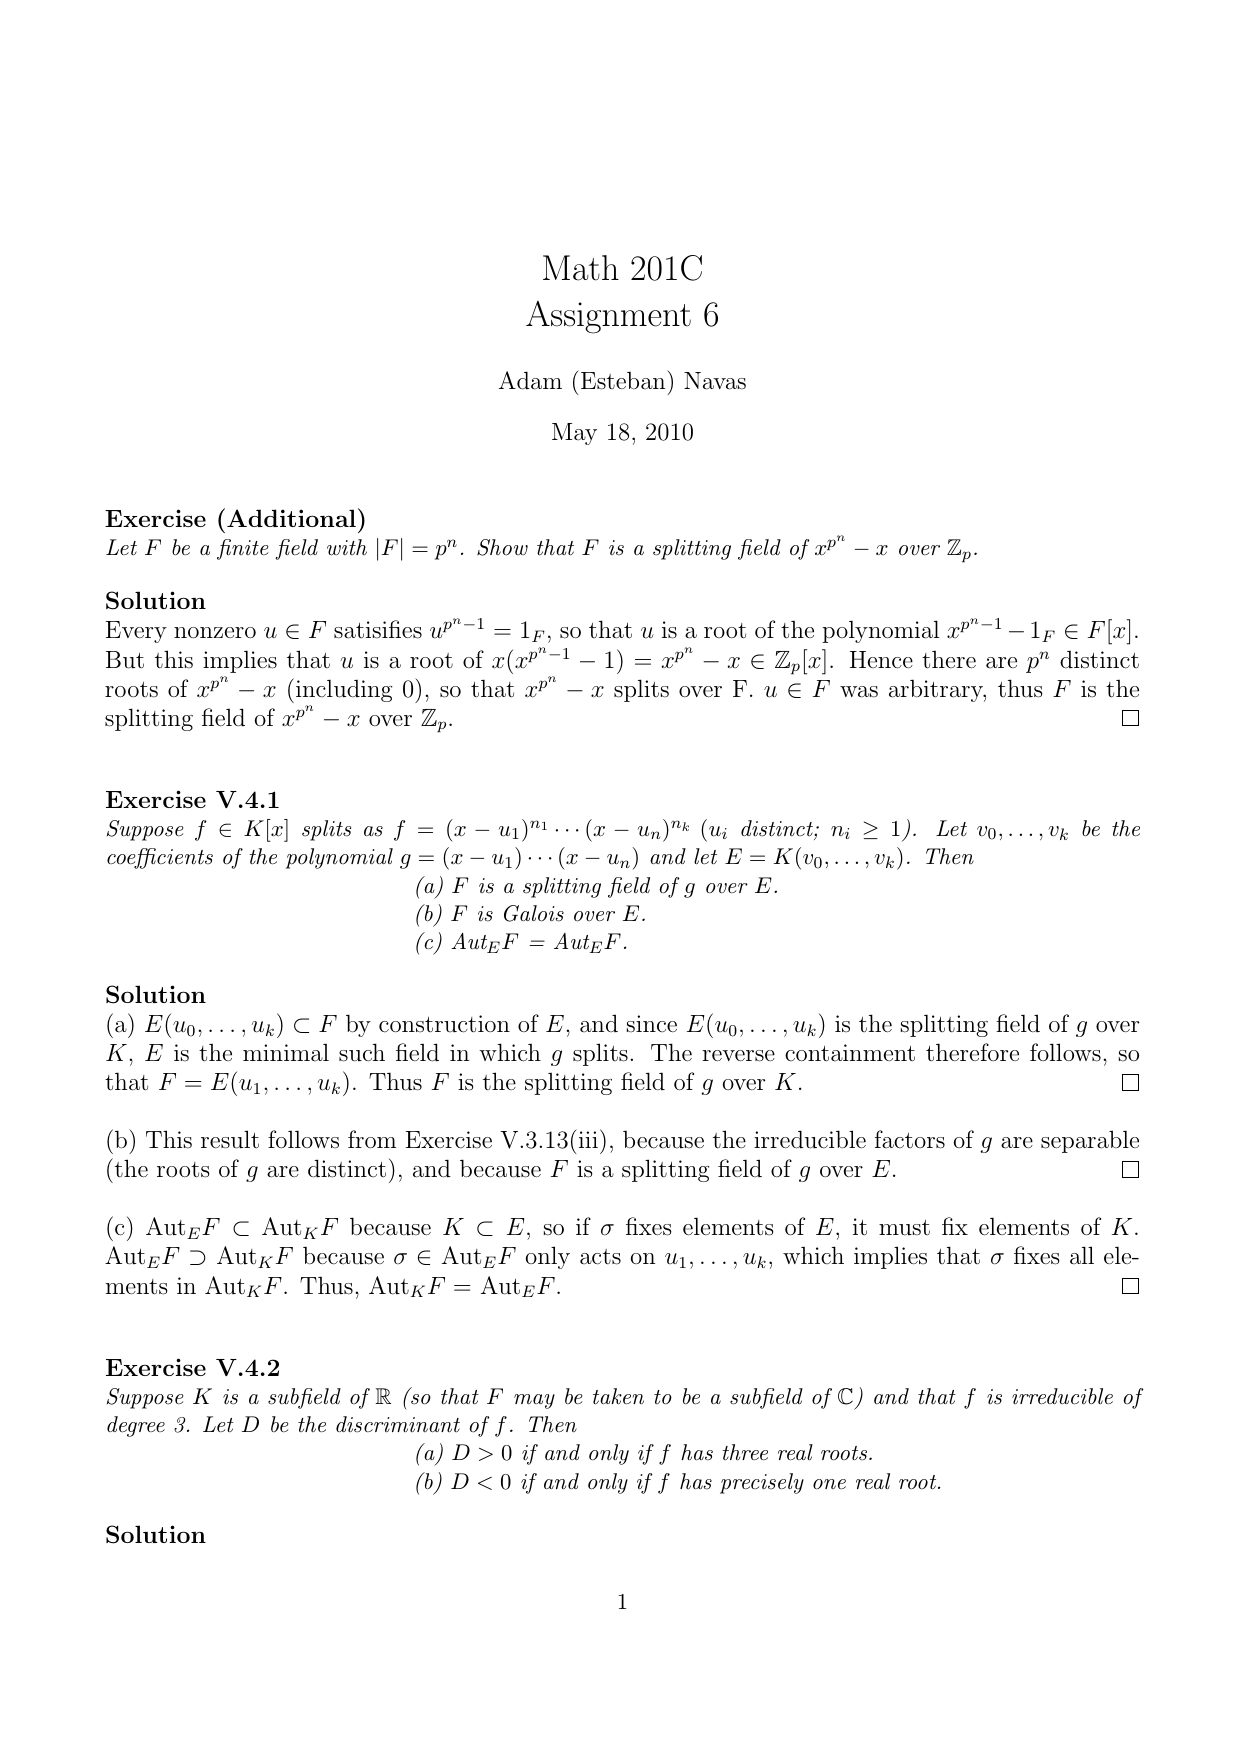 Math 1c Assignment 6